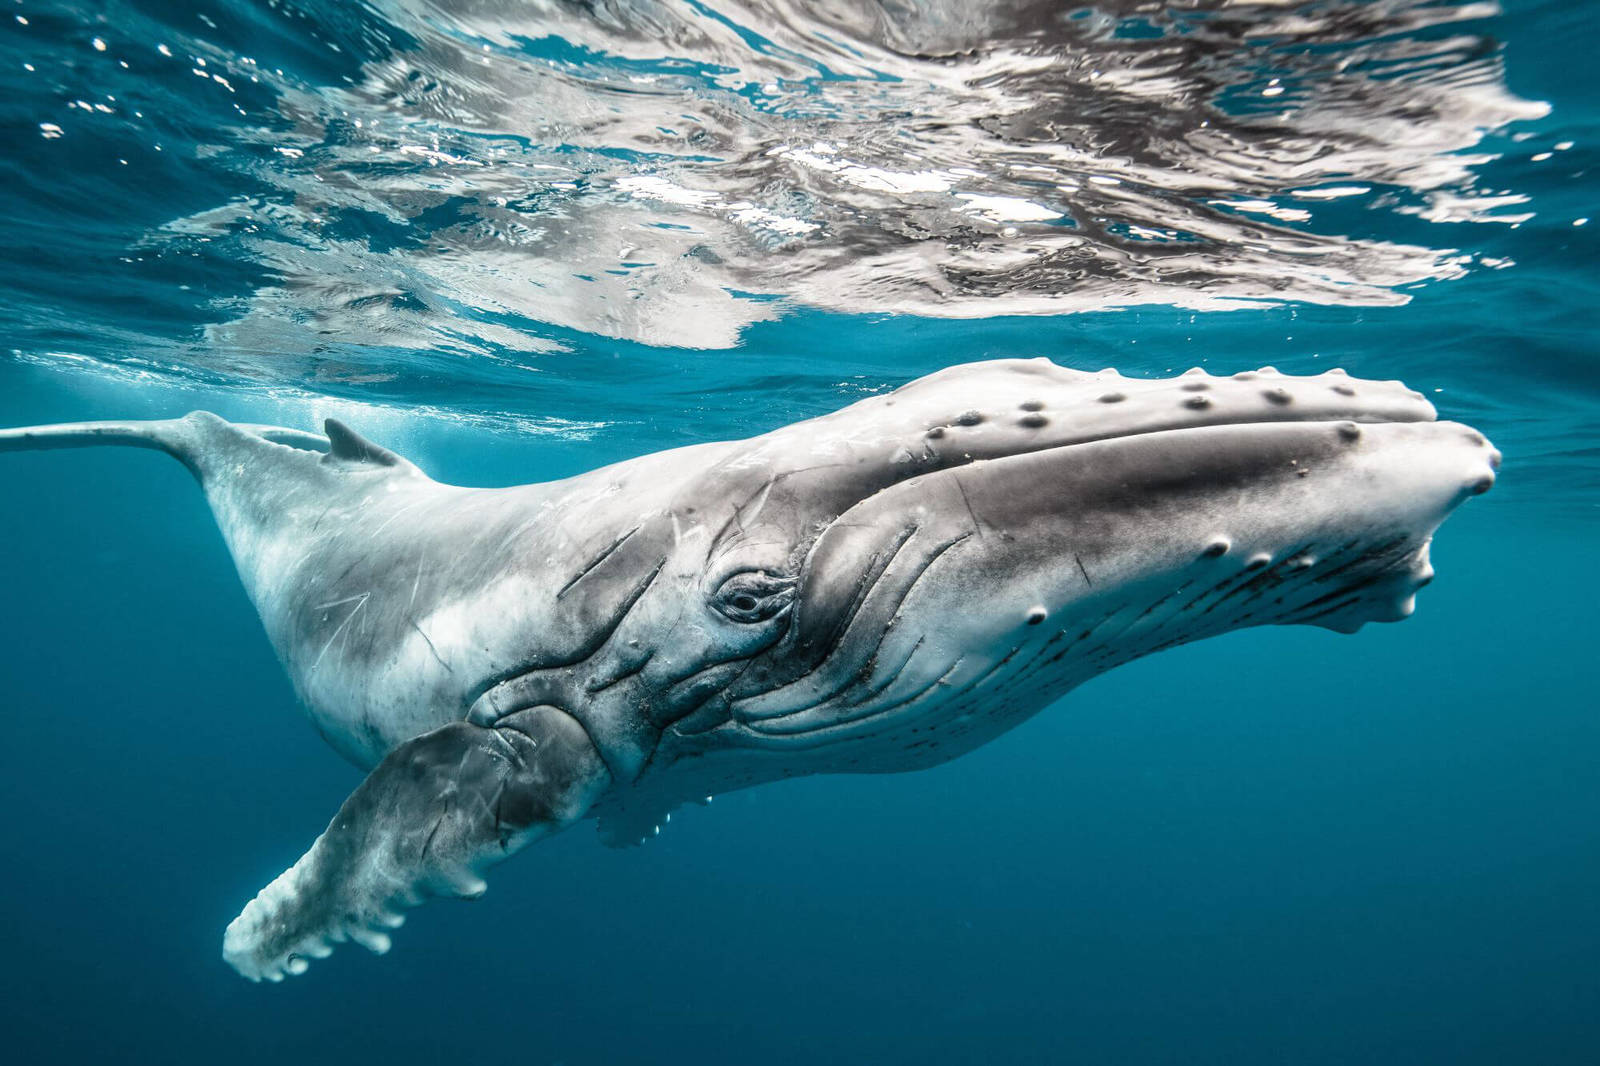 Come un enorme balena riesce discretamente avvicinarsi di soppiatto alla grande косякам pesci?